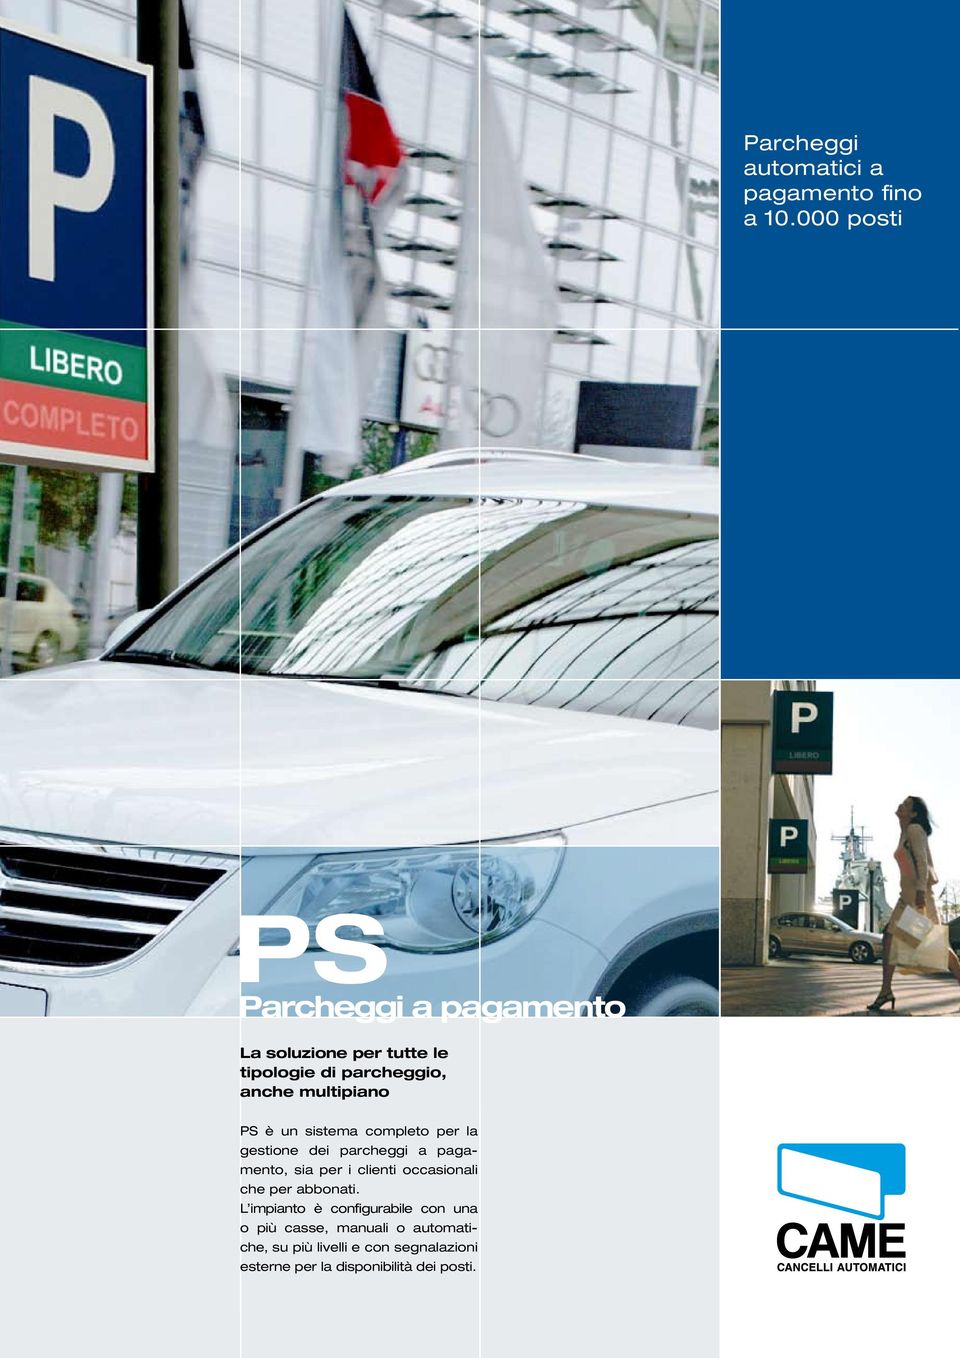 multipiano PS è un sistema completo per la gestione dei parcheggi a pagamento, sia per i clienti